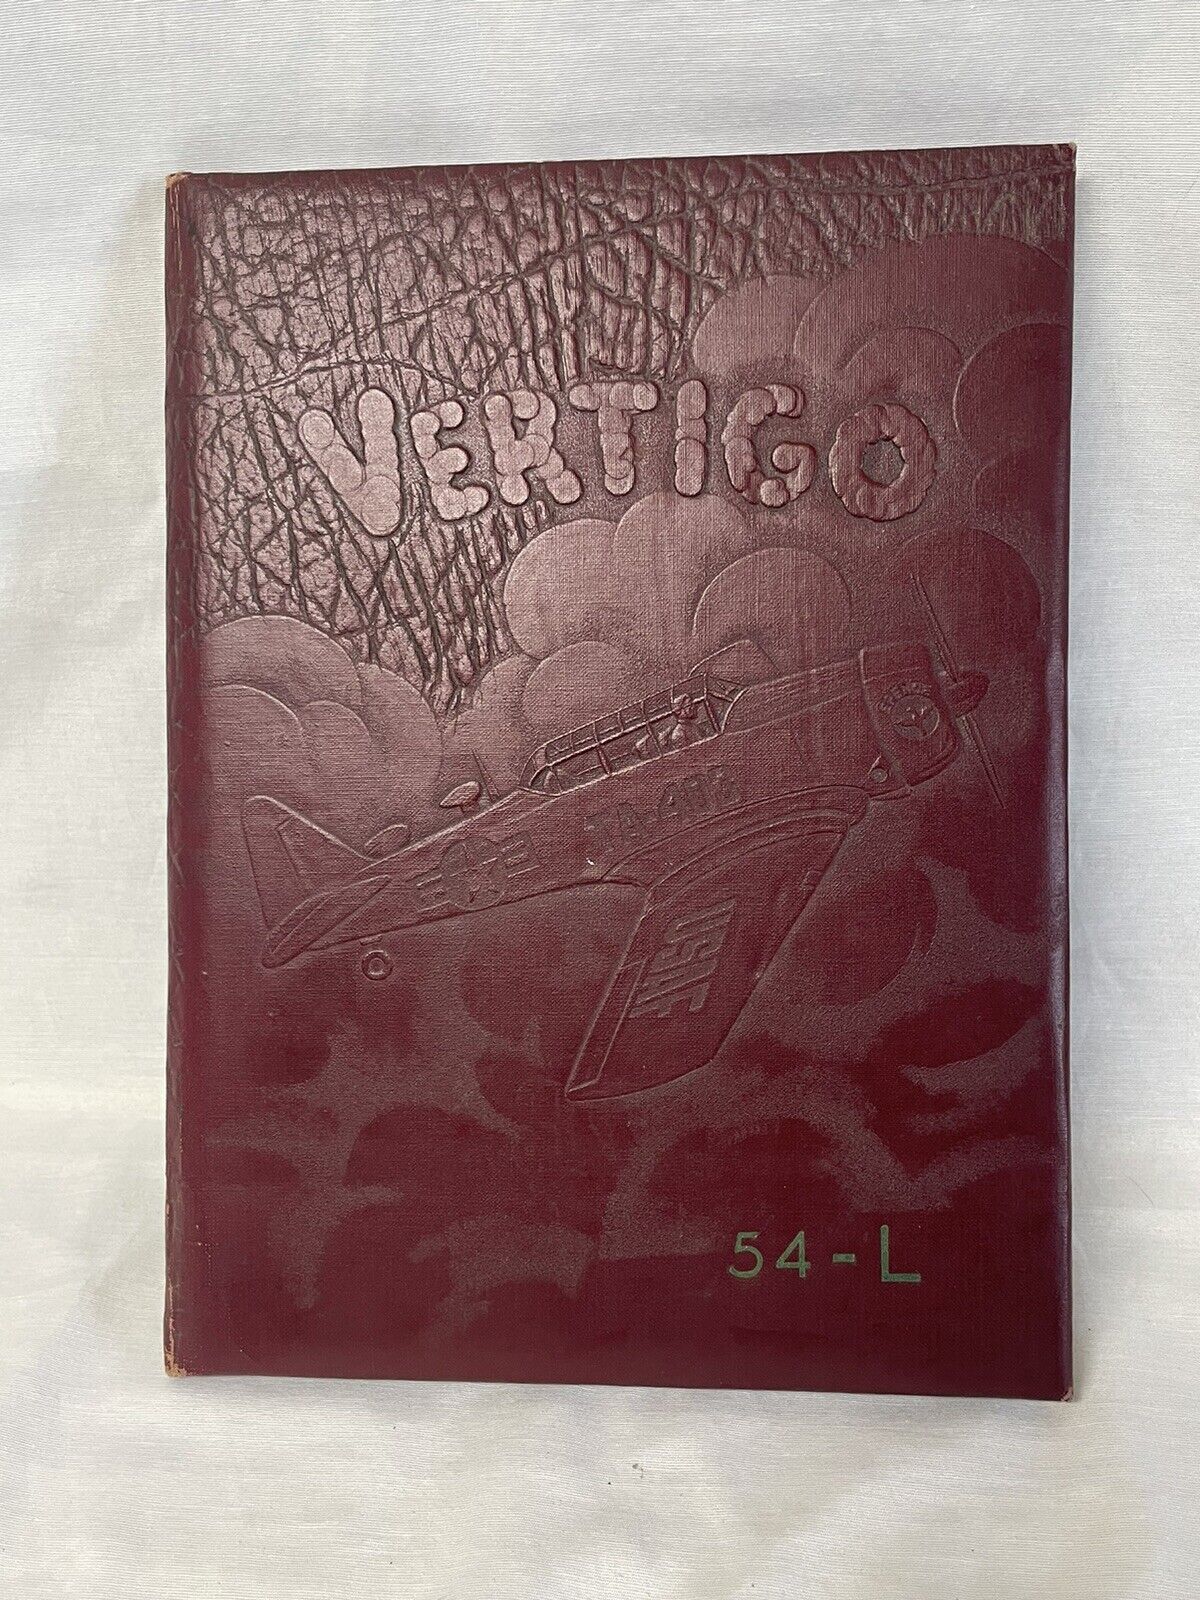 1954 USAF Spence Air Base Vertigo Air Force Pilot Yearbook 54-L Moultrie Georgia